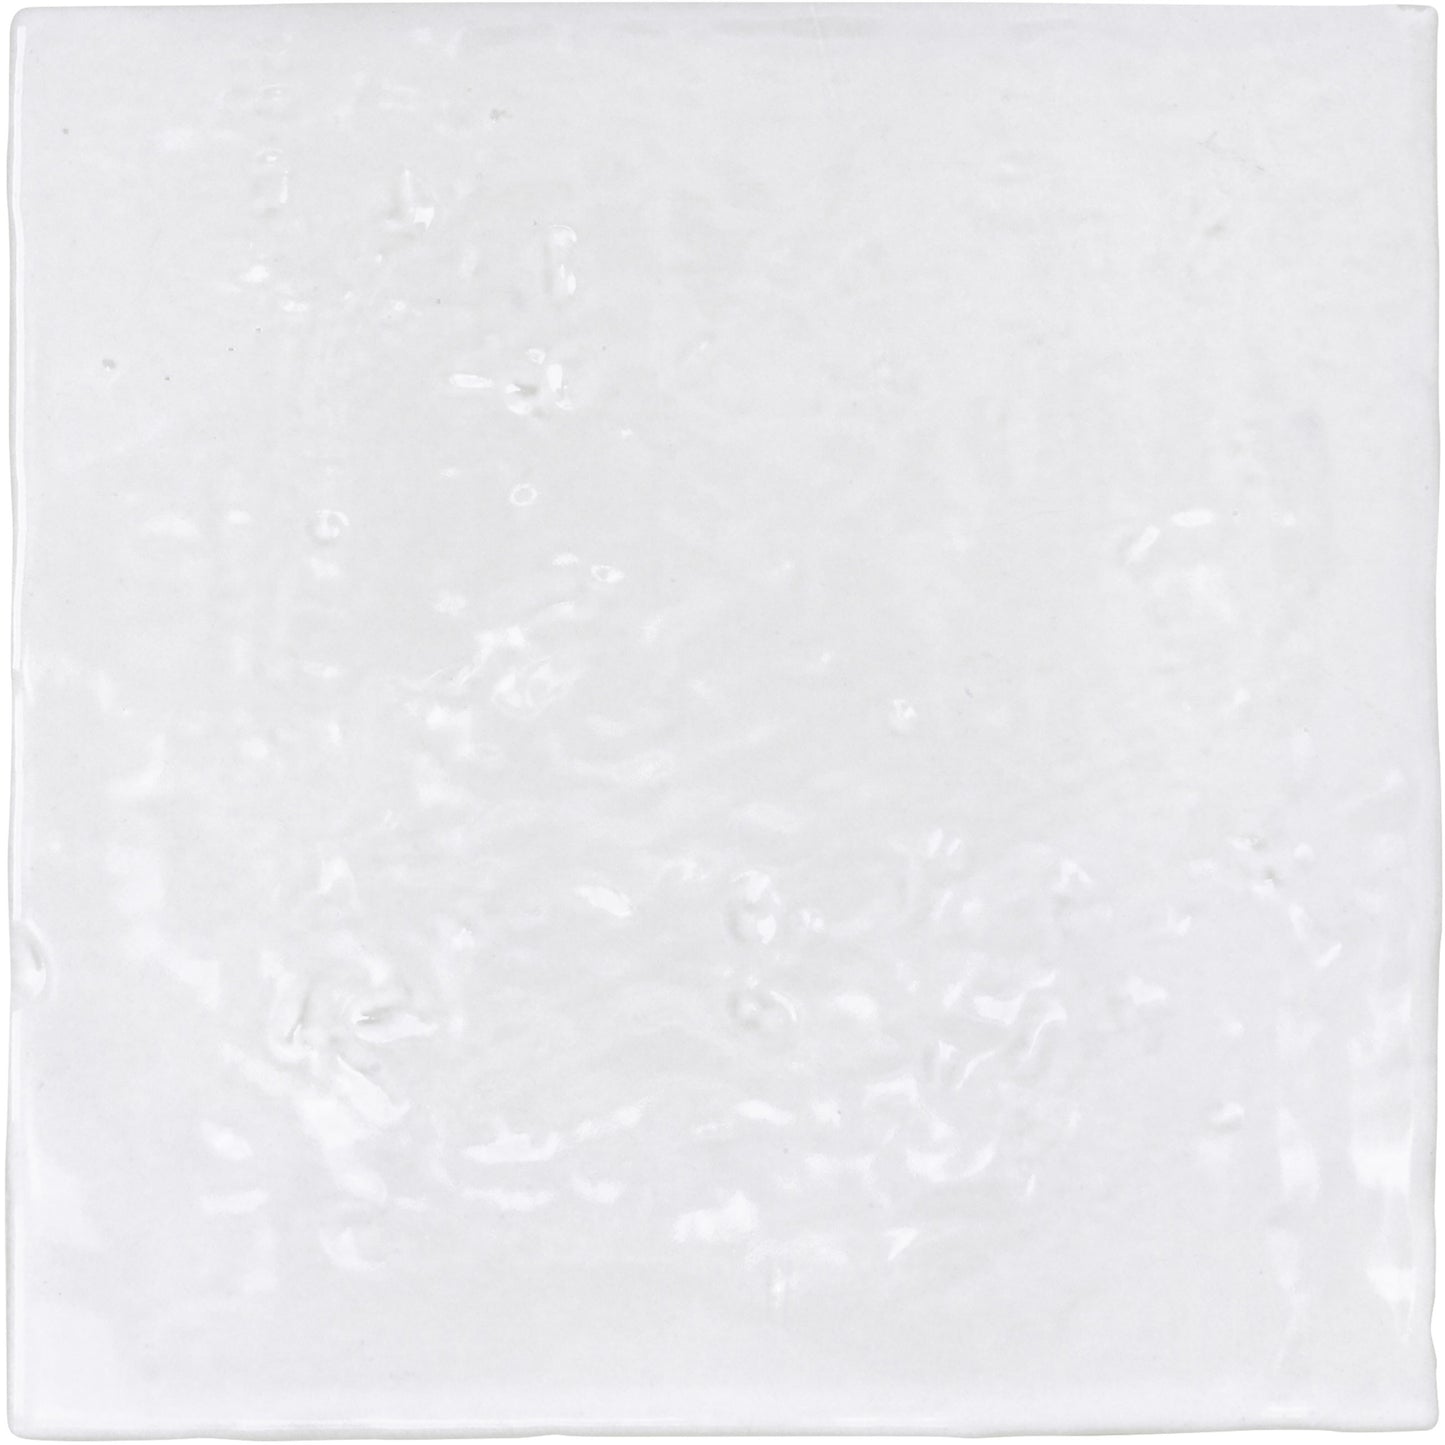 Nador white 5.2x5.2 pei:2 10.76pc/bte